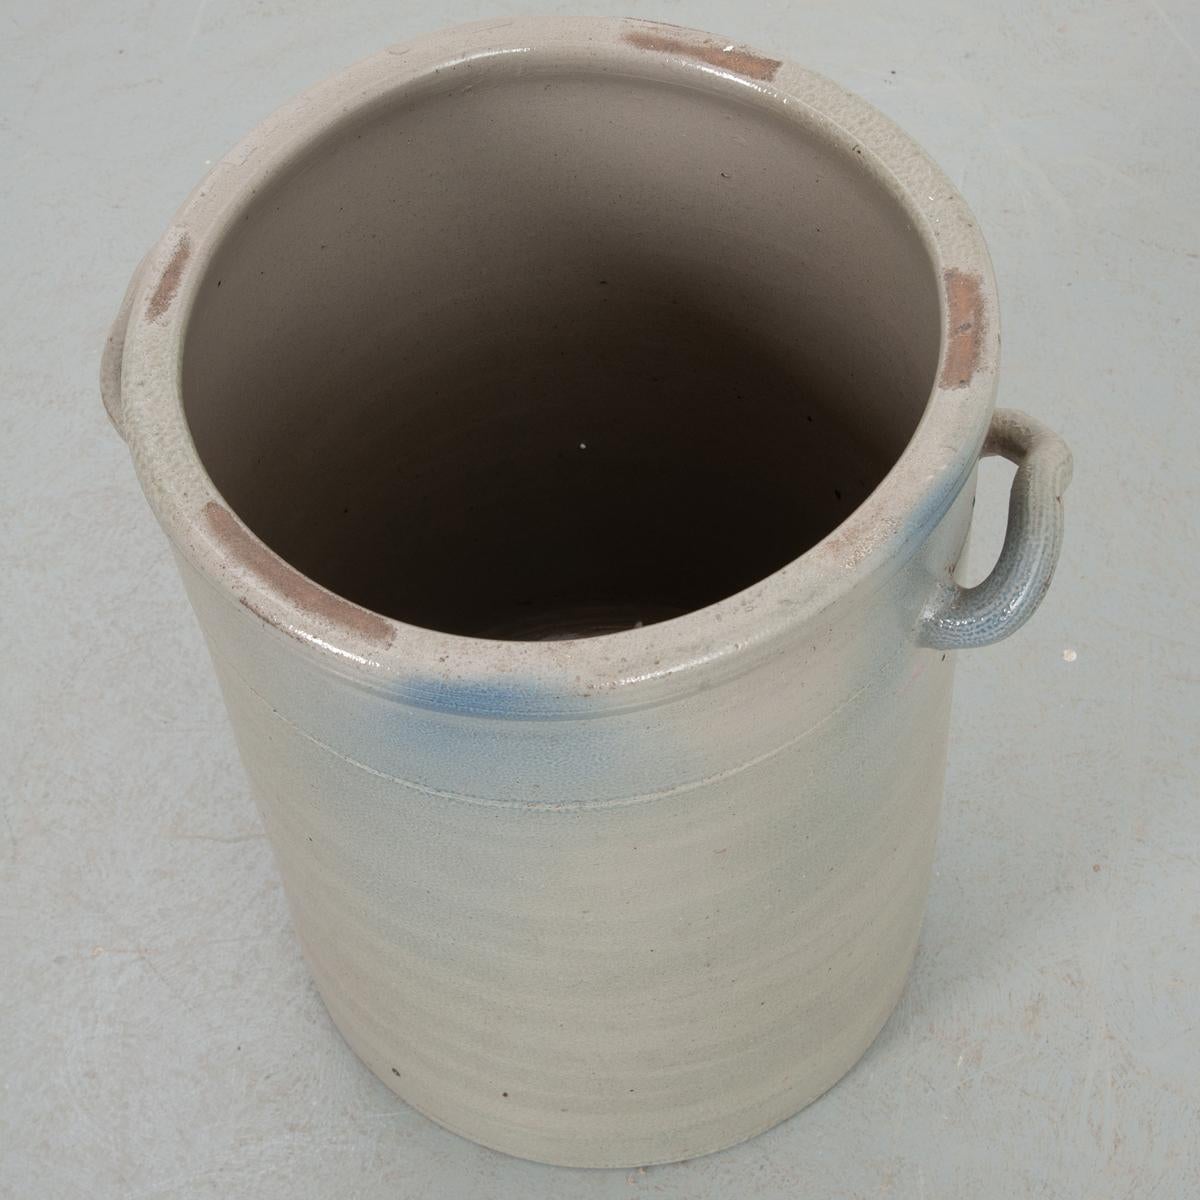 Dies ist eine charmante Keramik Vorratsdose, gemalt eine hellgraue Farbe. Seine mittlere Größe macht ihn zu einem vielseitigen Stück, das sich leicht in Ihre bestehende Einrichtung einfügen lässt. Mit zwei umgedrehten Griffen zum Tragen befestigt.